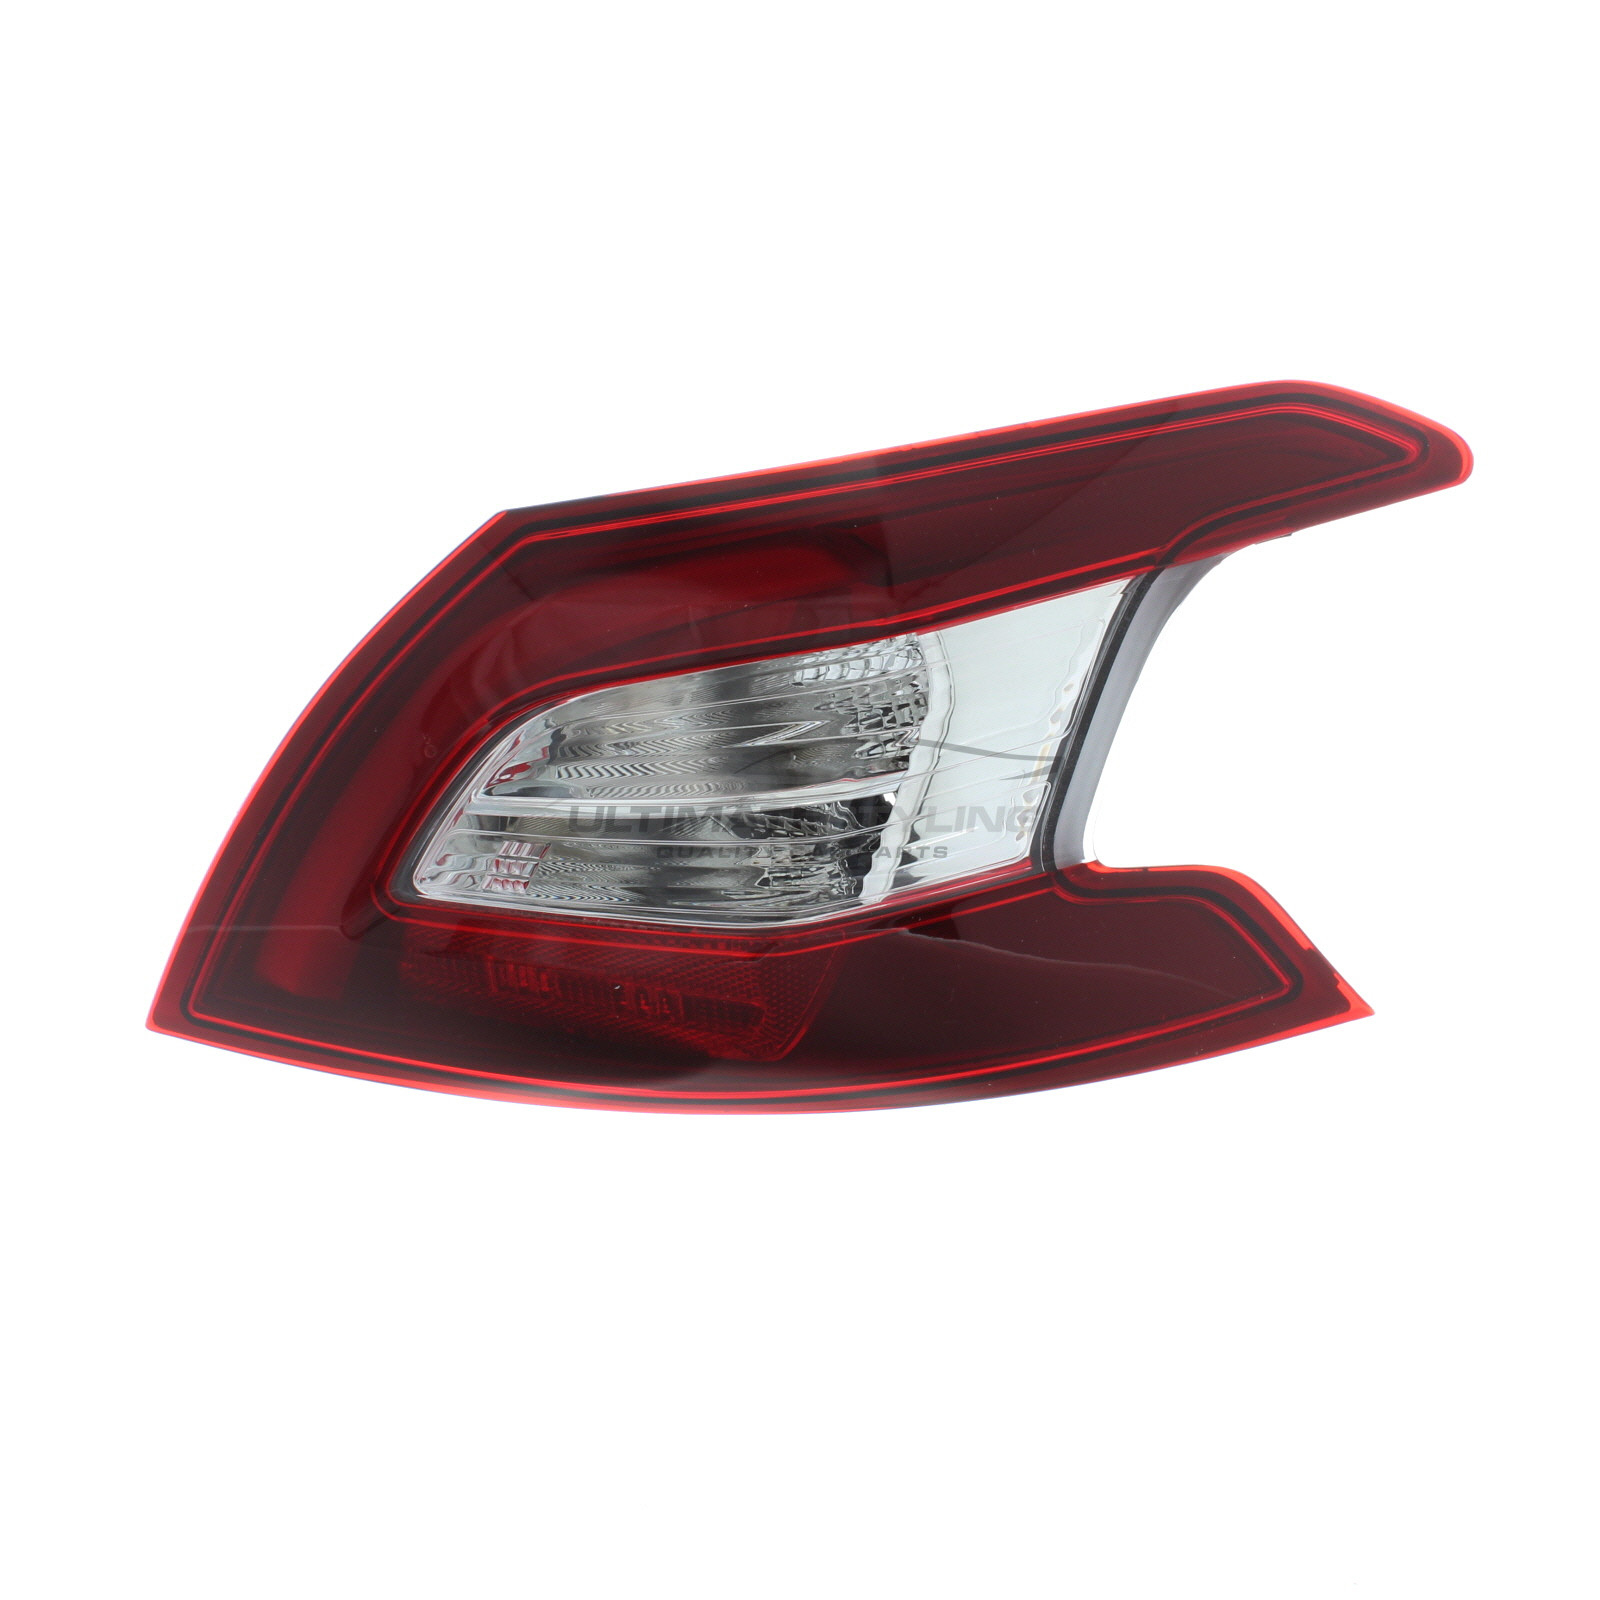 Rear Light / Tail Light for Peugeot 308